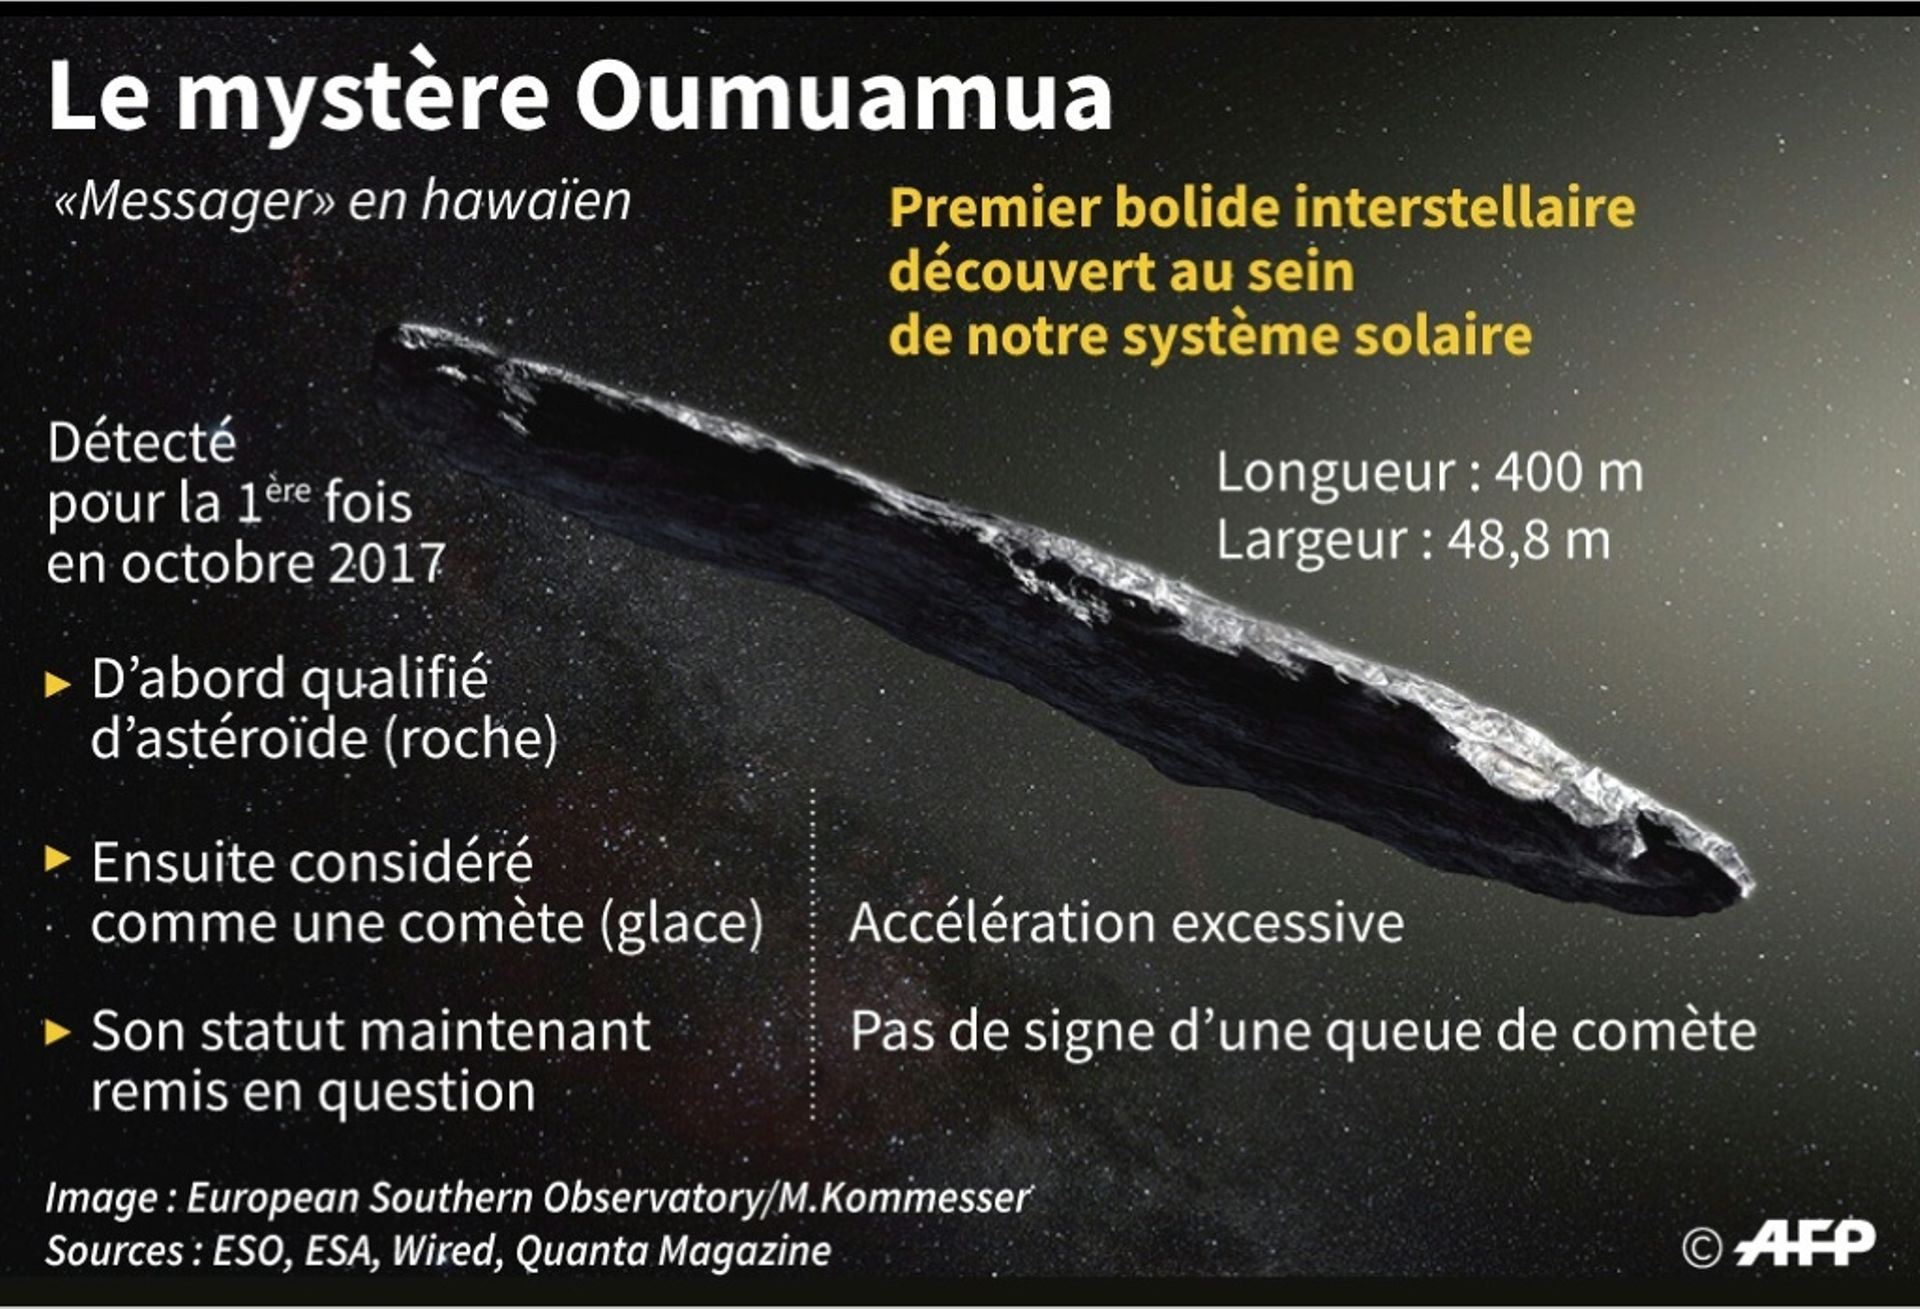 Le mystère Oumuamua